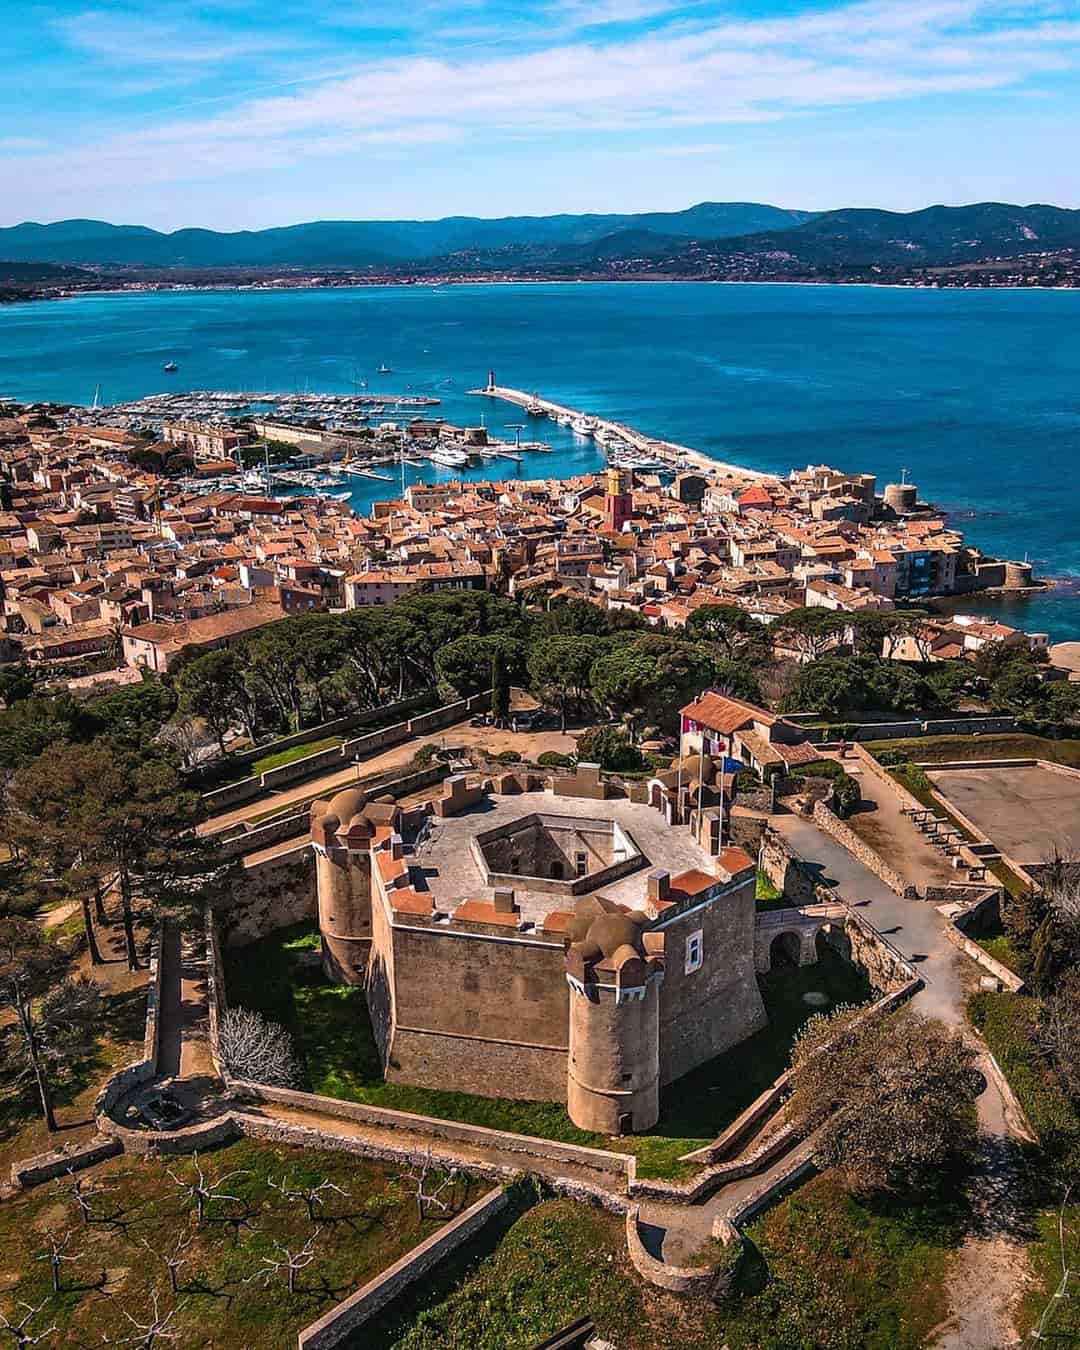 Citadelle, Vieille ville, Saint-Tropez, France